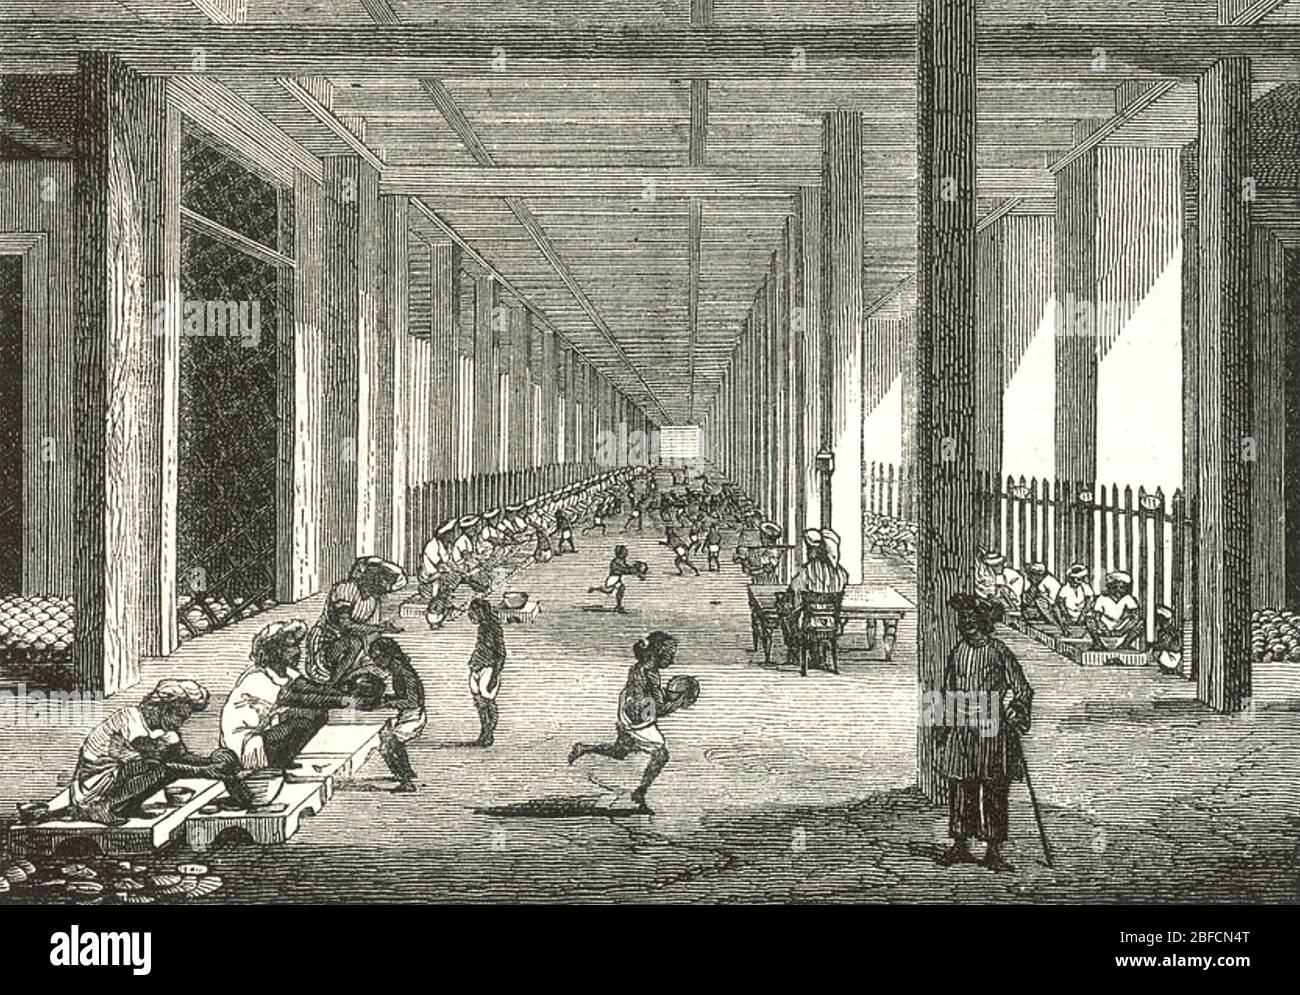 FABBRICA DI OPPIO a Patna, Bengala, India, gestita dalla British East India Company circa 1860. Qui nella sala da ballo l'oppio grezzo viene avvolto in foglie prima della conservazione. Foto Stock